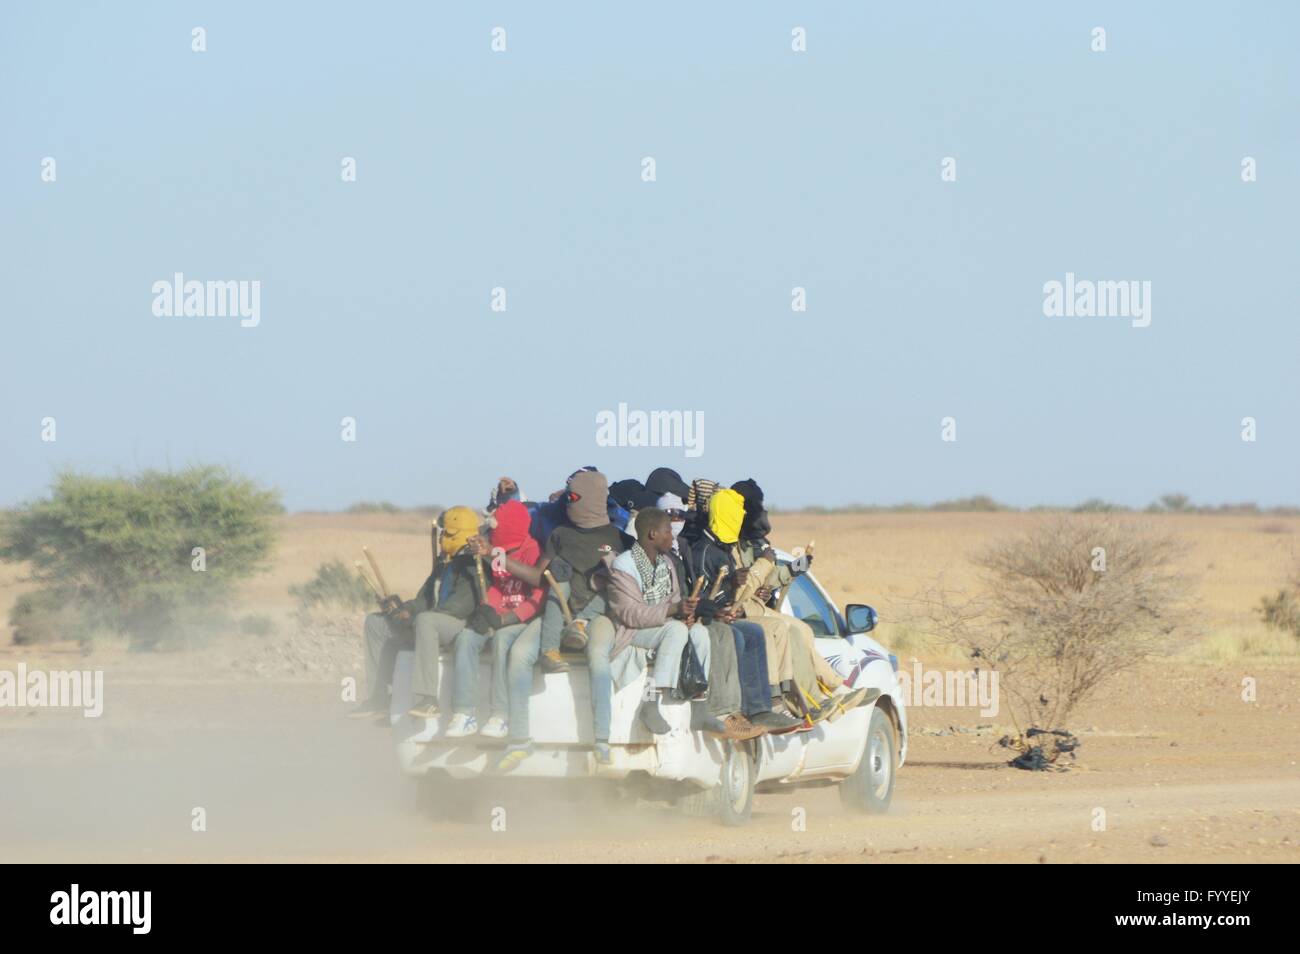 Les migrants des pays d'Afrique subsaharienne avec cible l'Europe après le départ d'Agadez vers Ténéré désert avec l'objectif provisoire du sud libyen - 11 janvier 2016 Banque D'Images